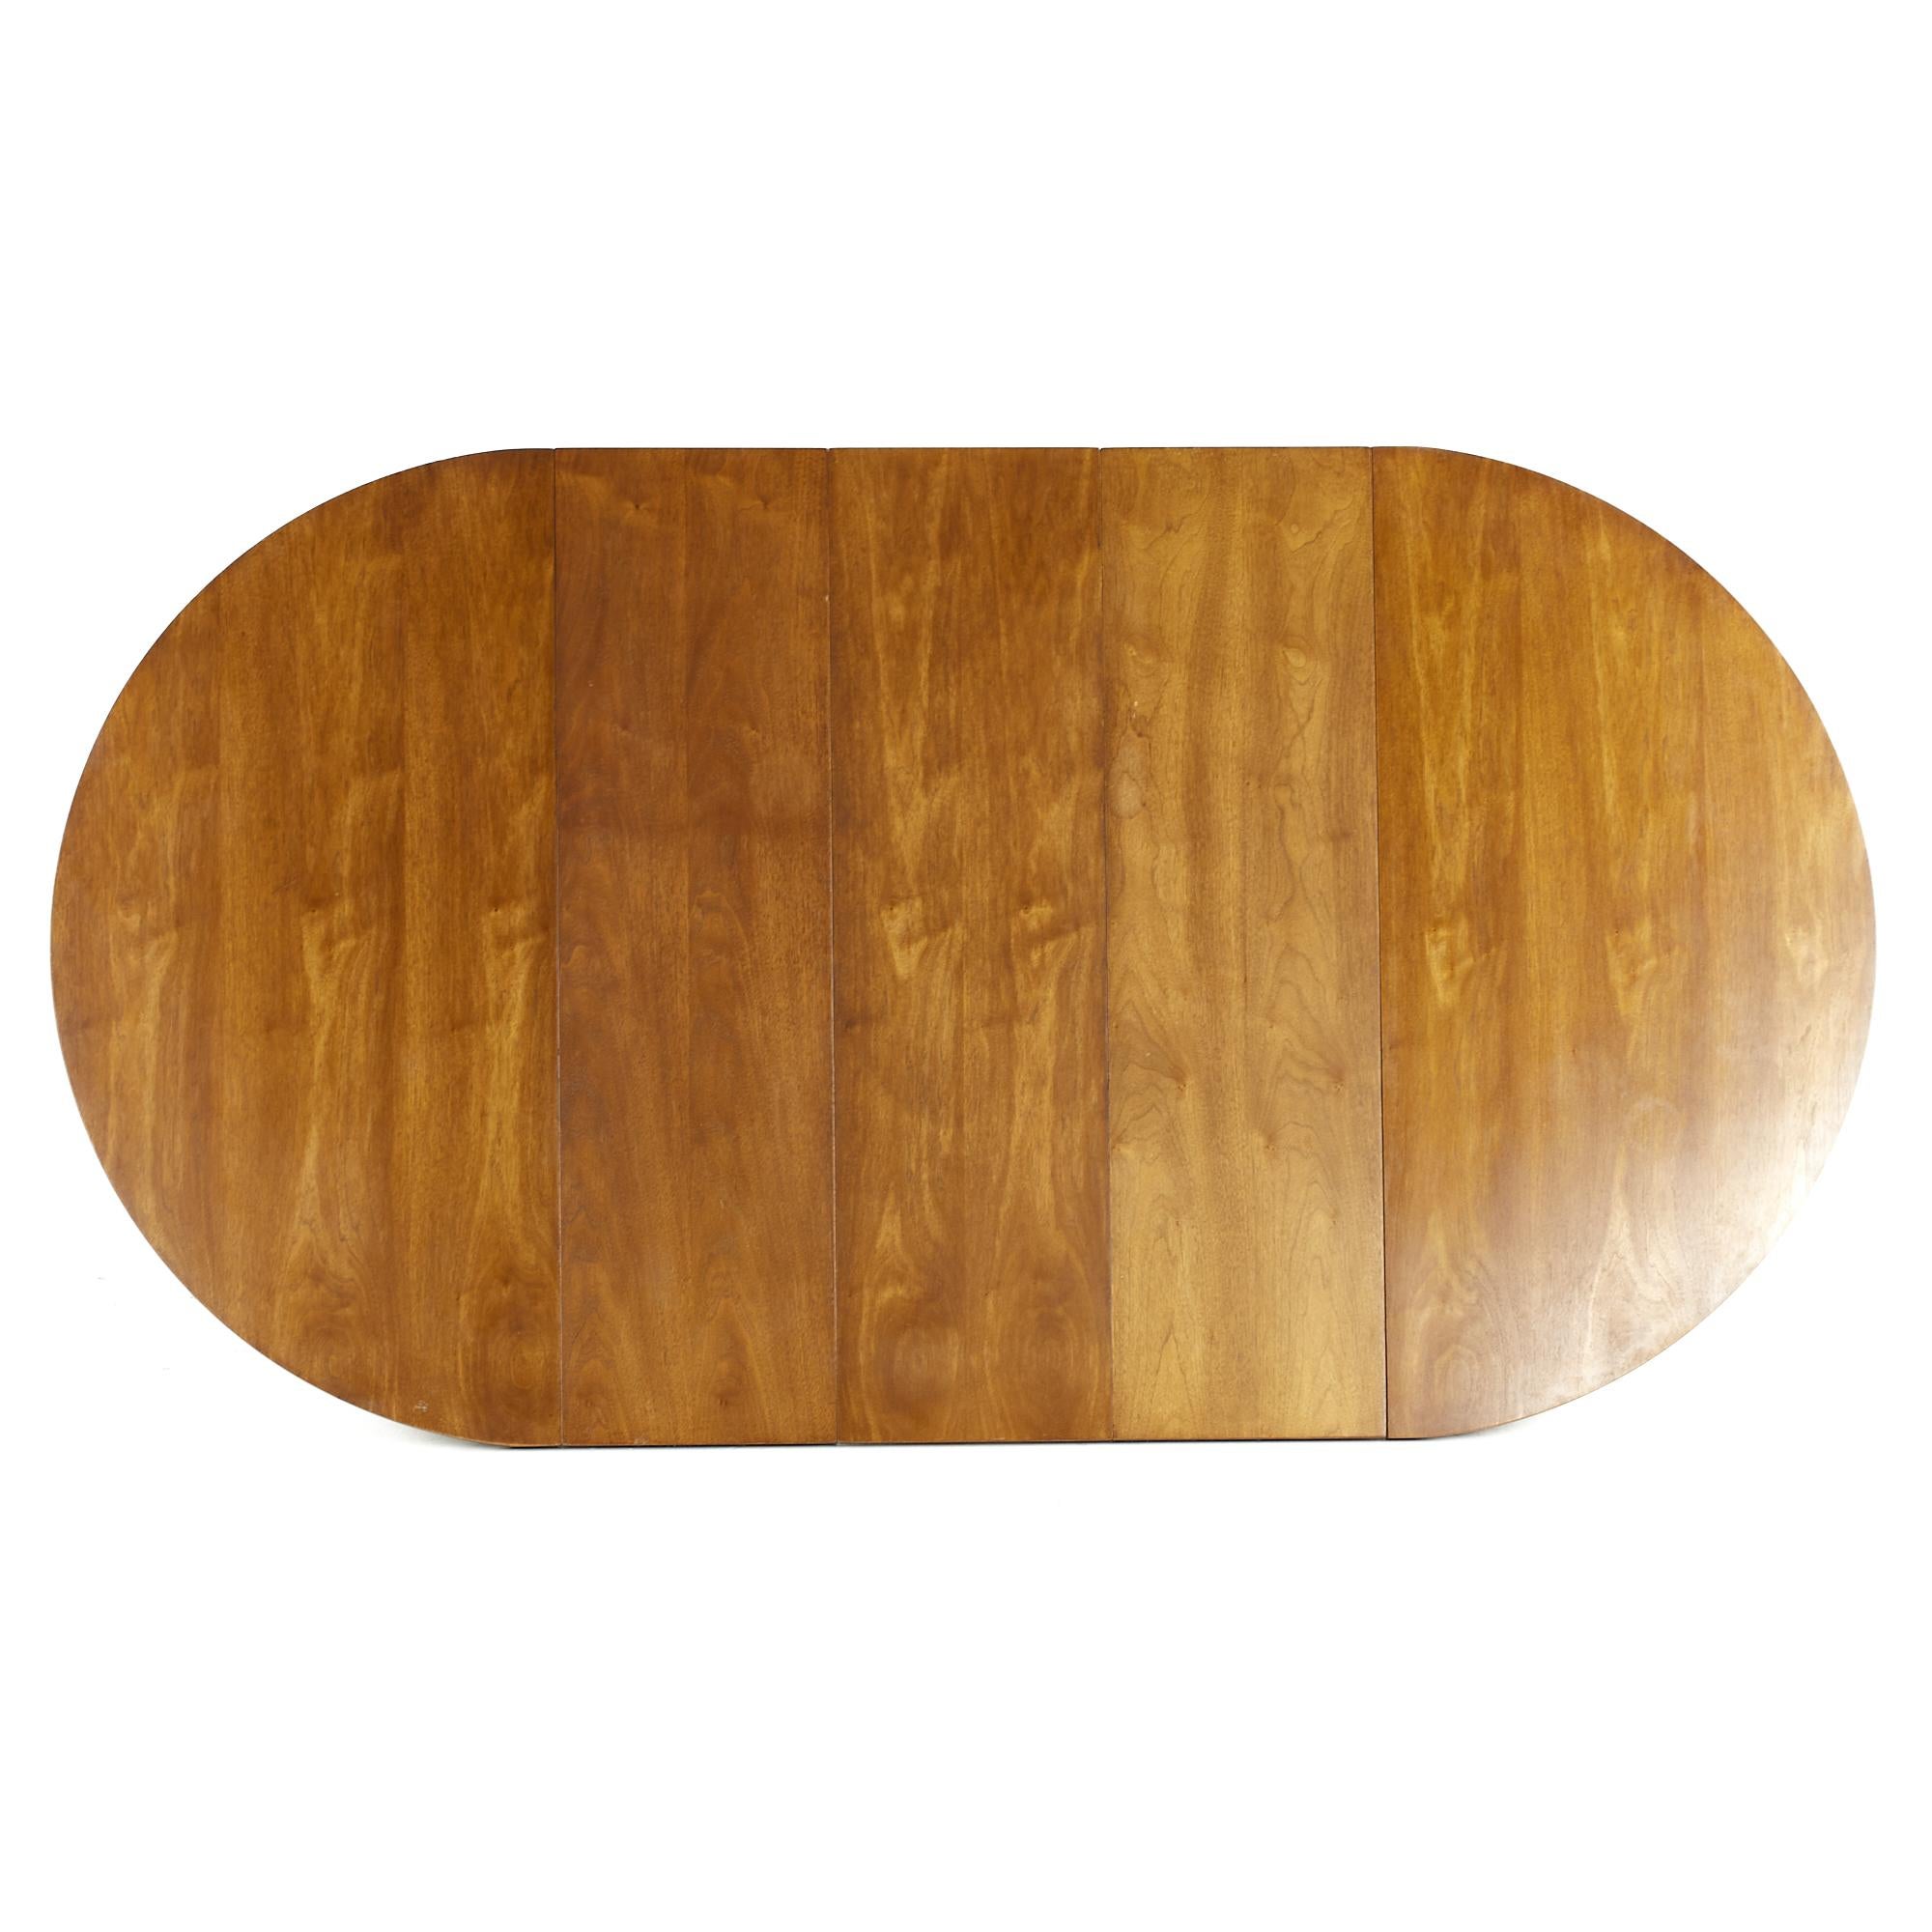 Broyhill Brasilia Midcentury Walnut Pedestal Table with 3 Leaves 9